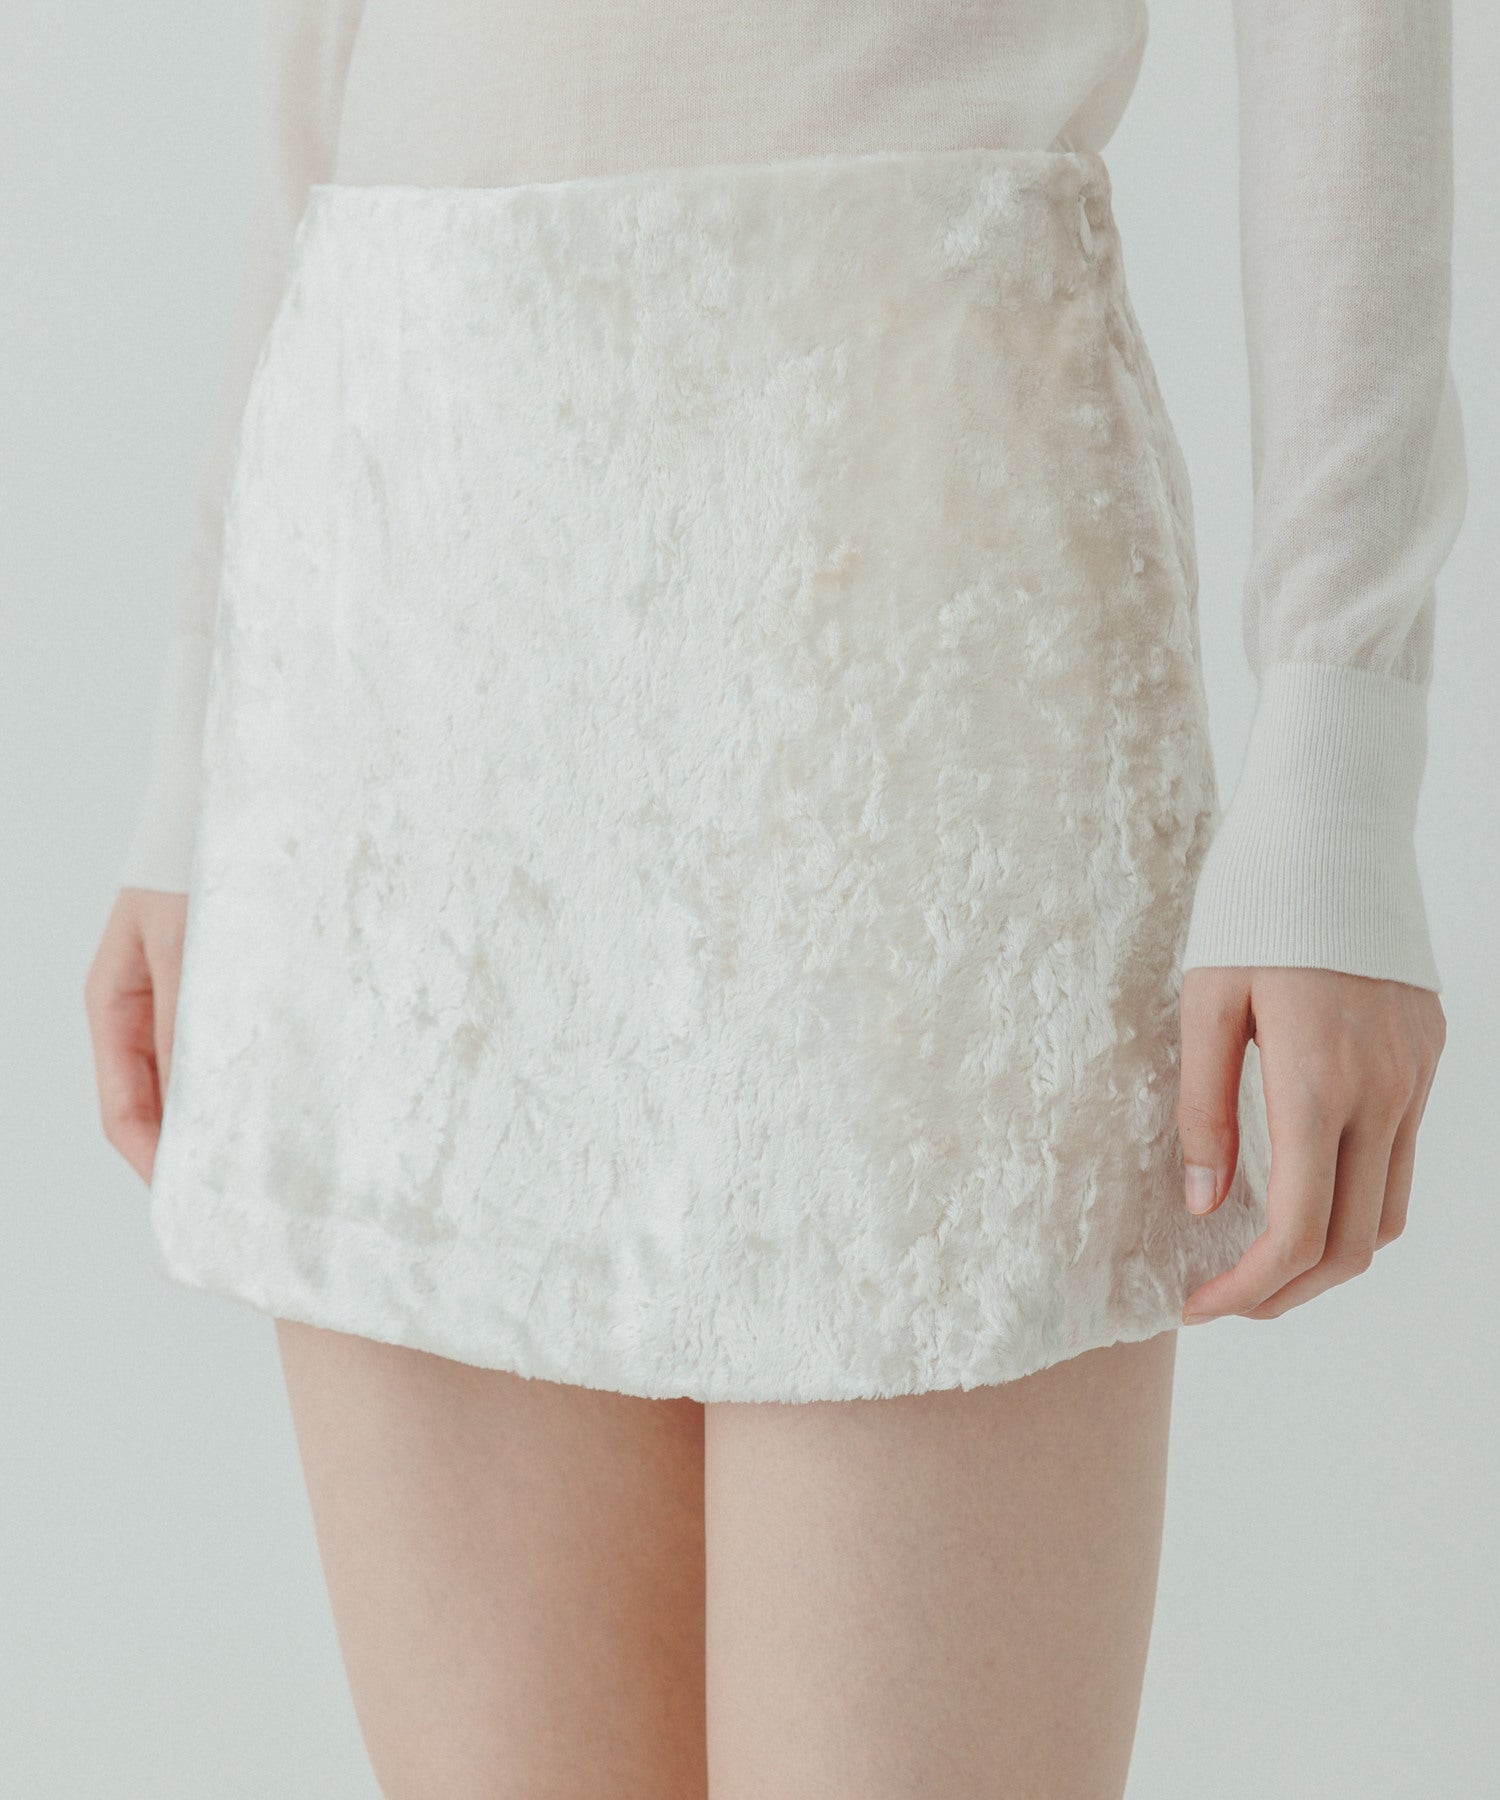 yo BIOTOP Wool sheer tight skirt サイズ0 - ロングスカート